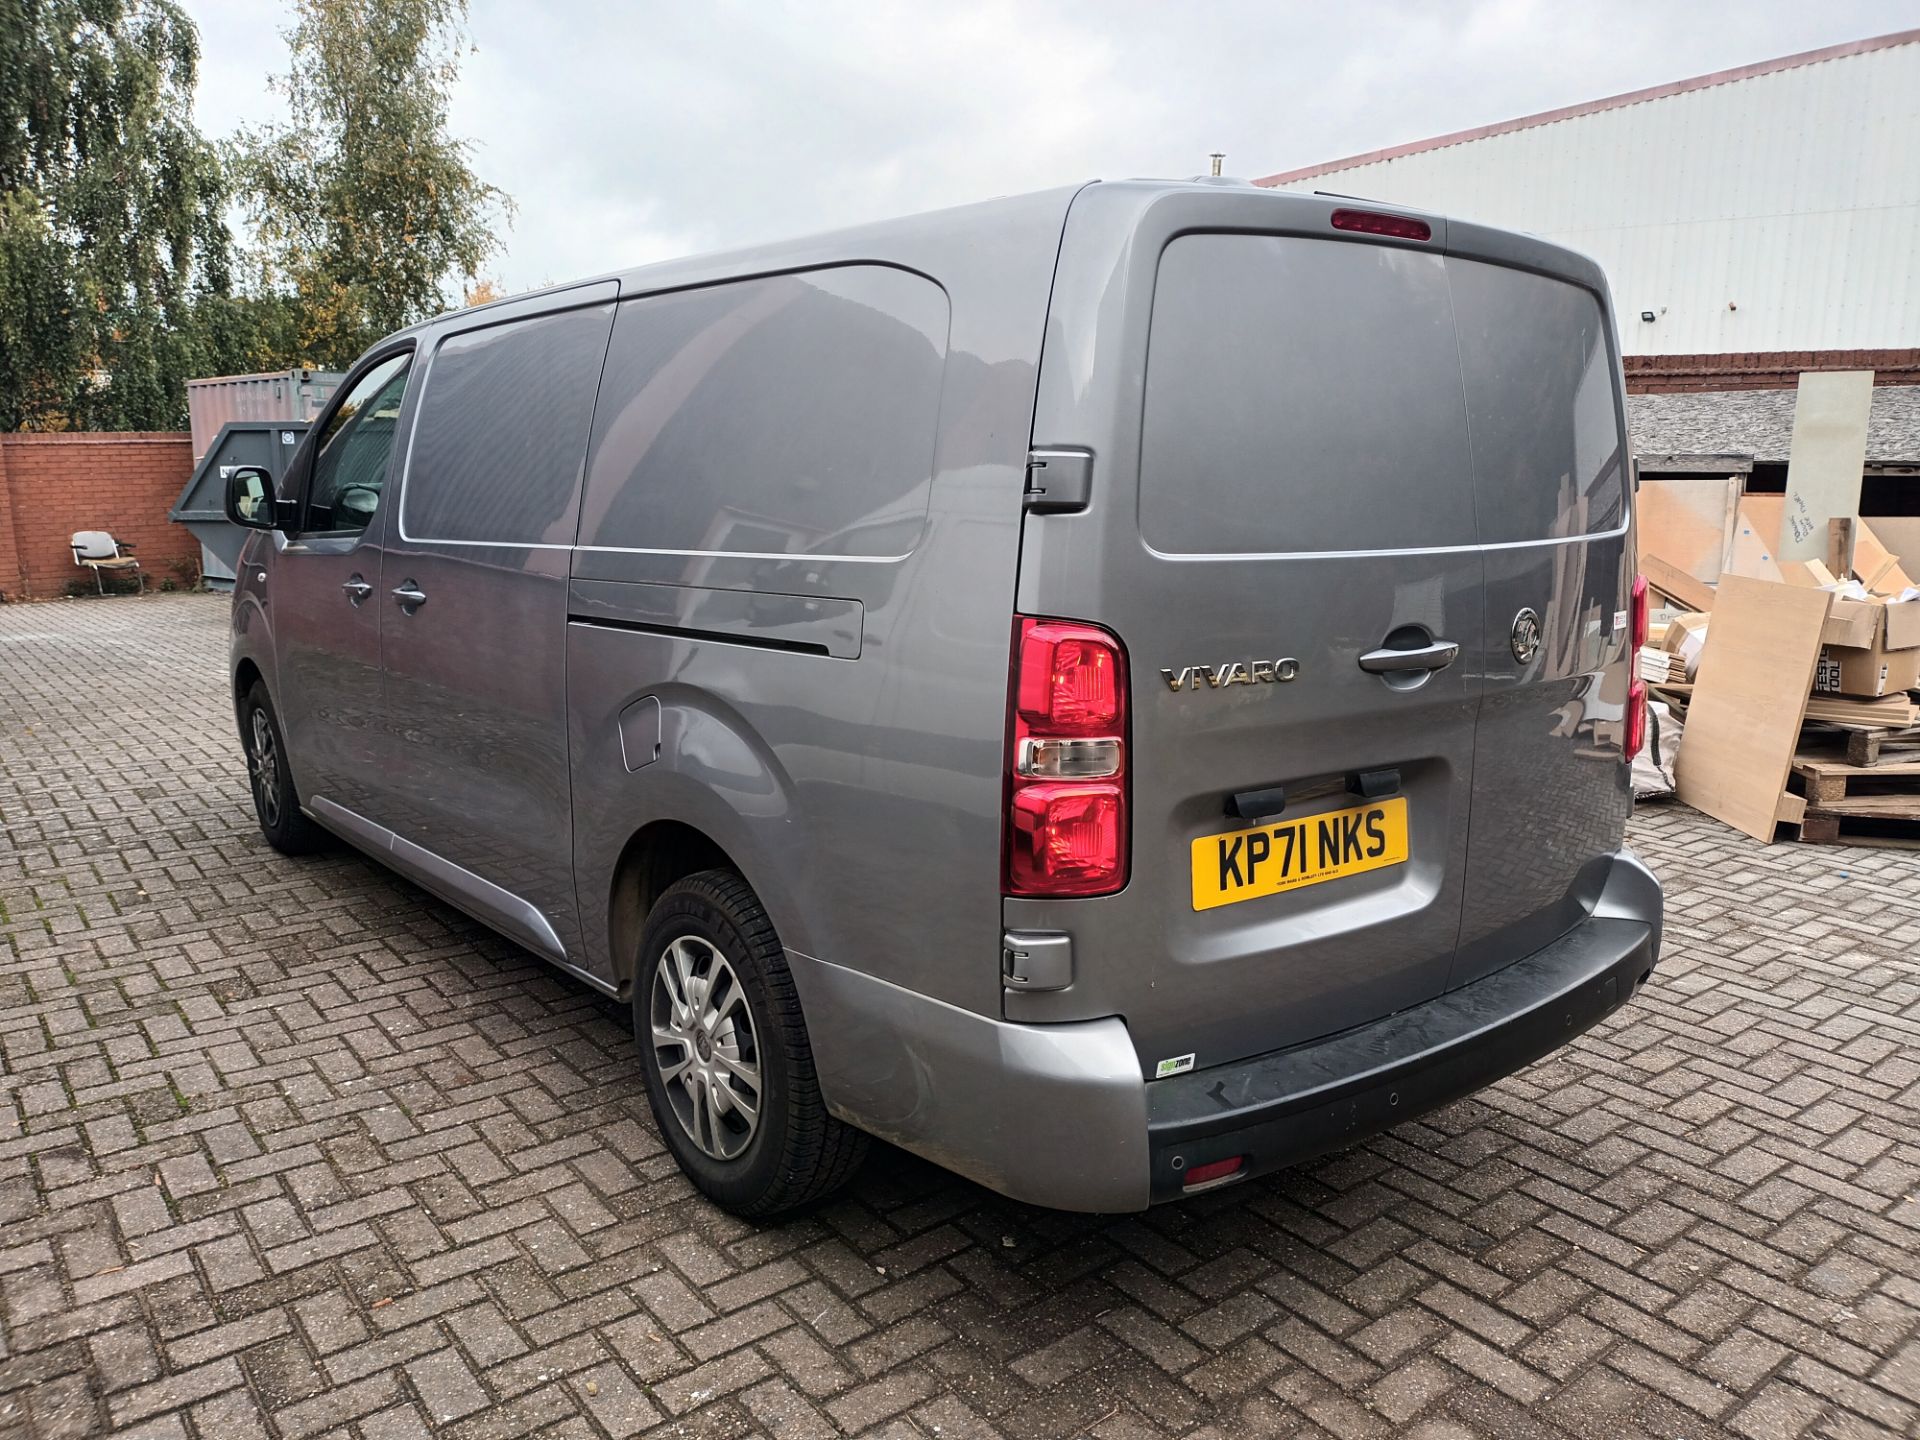 Vauxhall Vivaro L2 Diesel 3100 2.0d 120ps Sportive H1 Van (2019 -) registration plate KP71 NKS, - Image 9 of 10